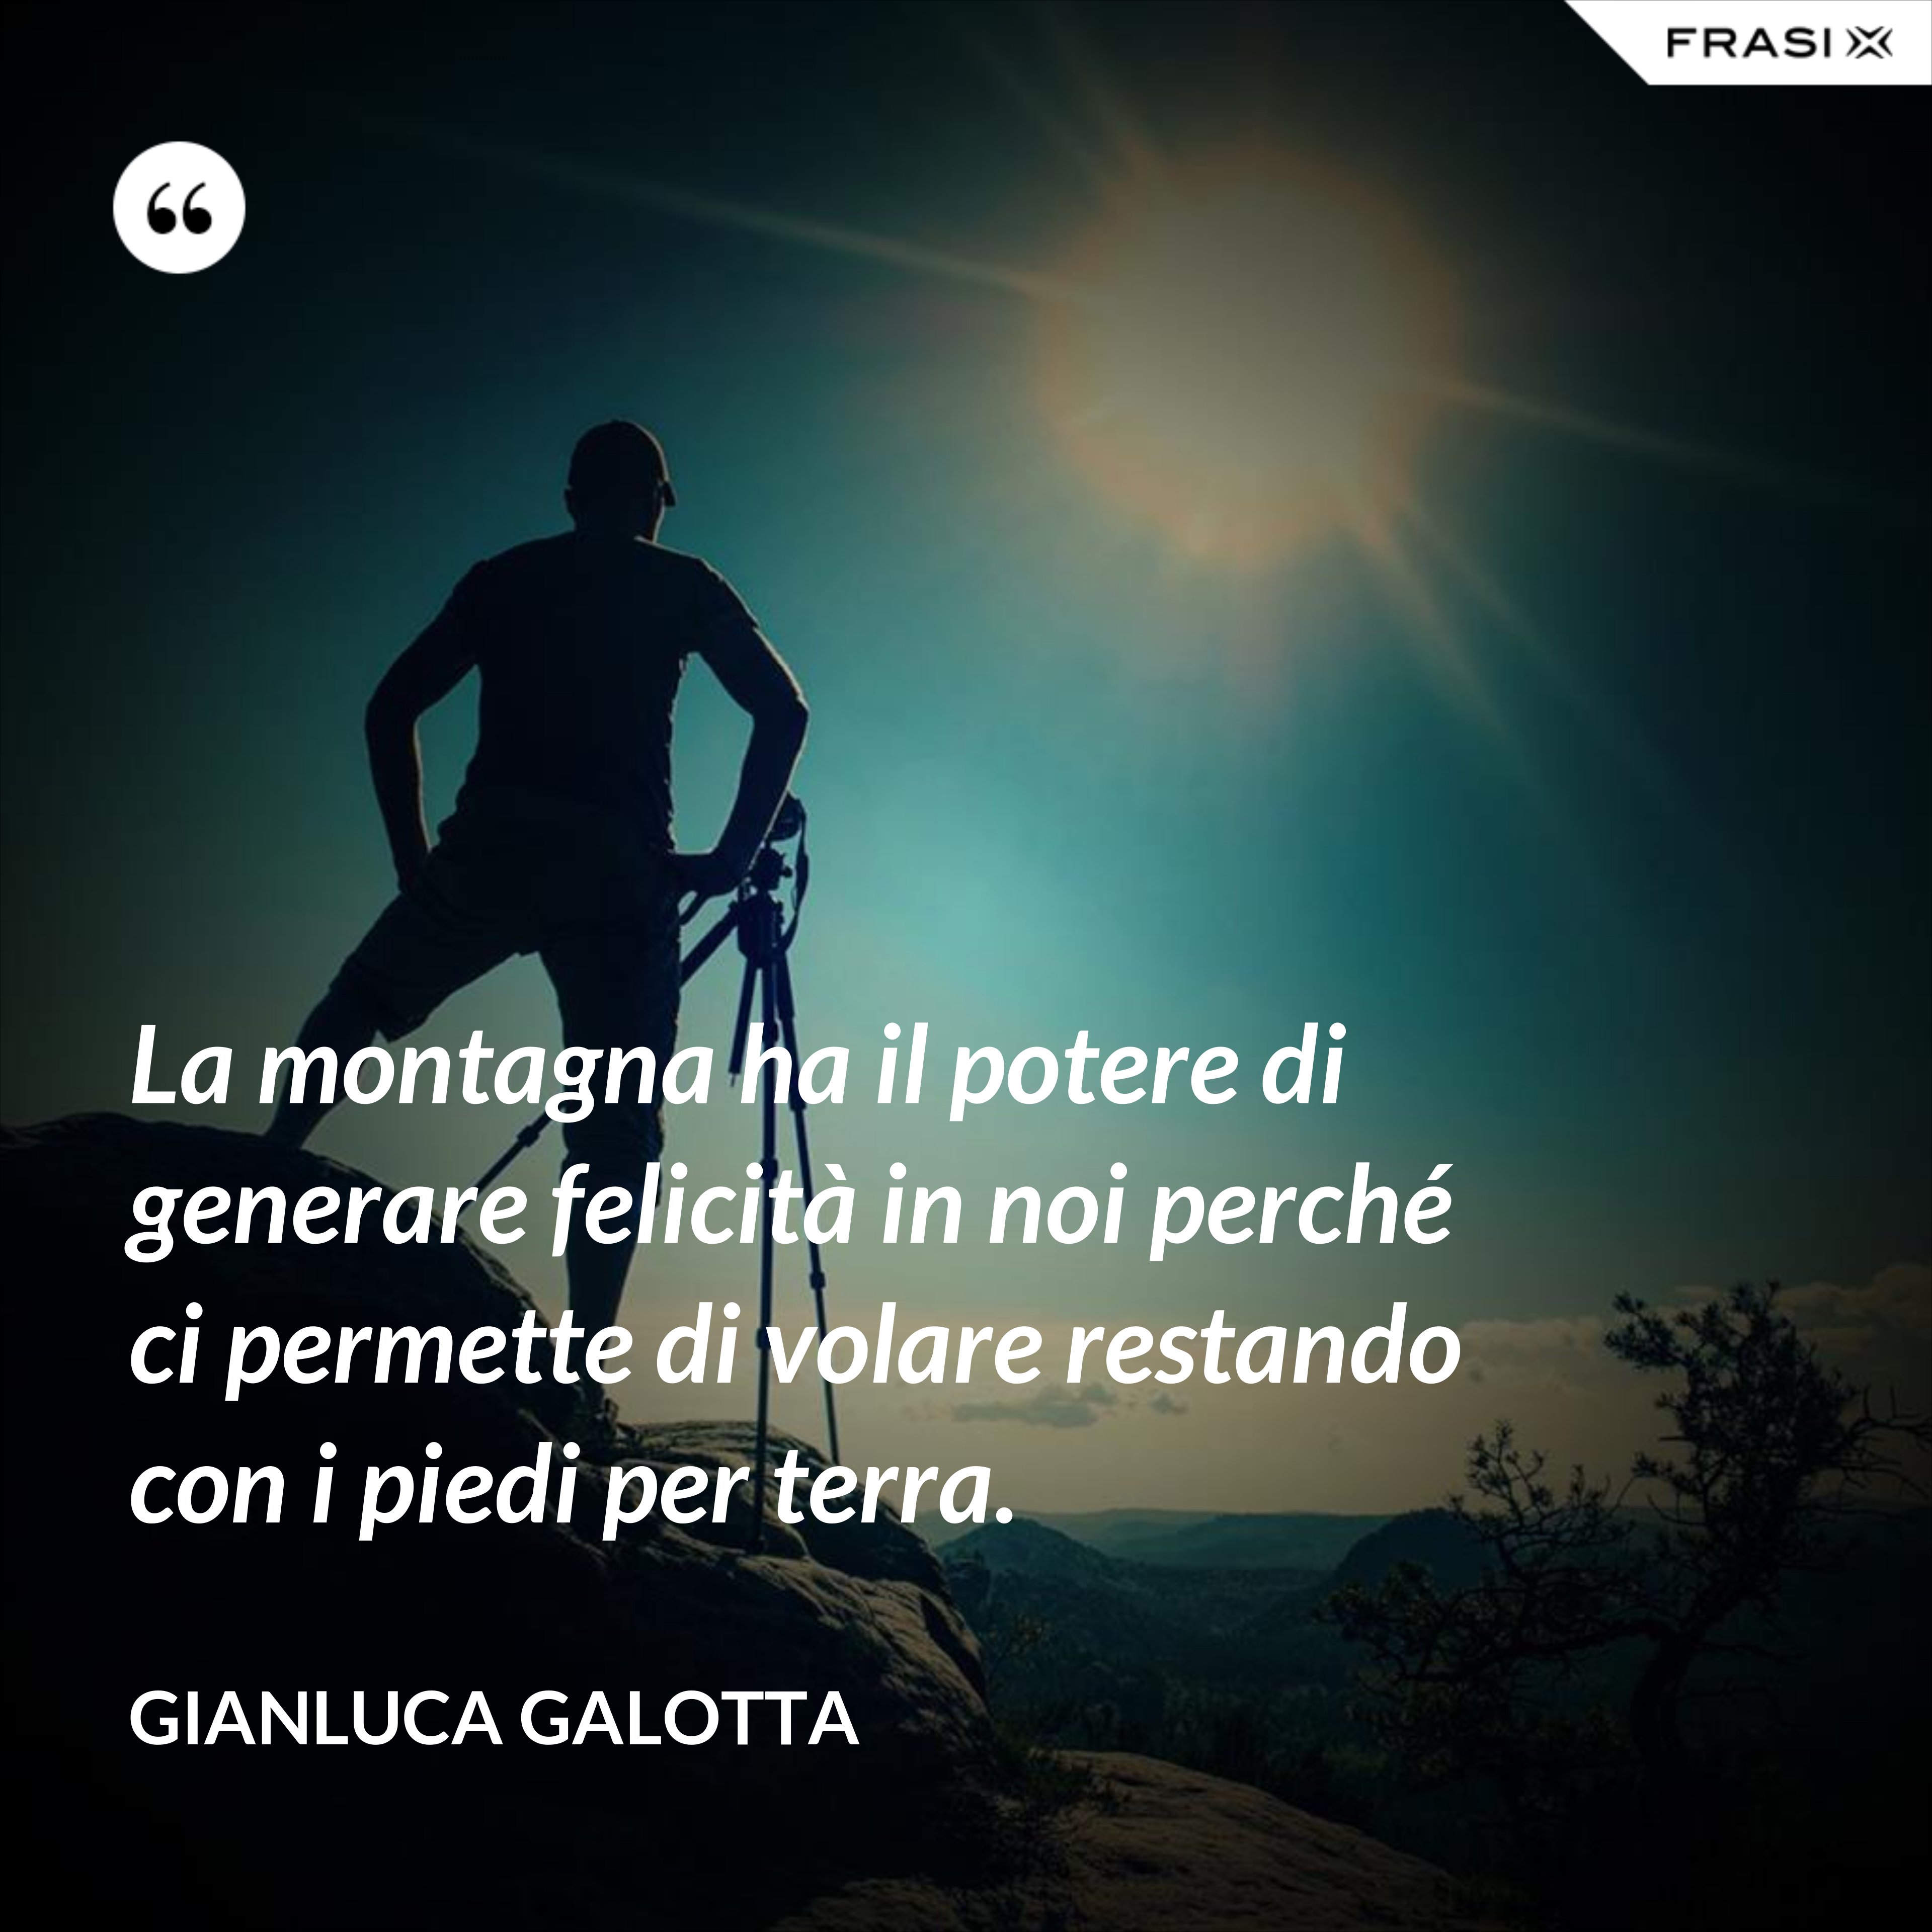 La montagna ha il potere di generare felicità in noi perché ci permette di volare restando con i piedi per terra. - Gianluca Galotta